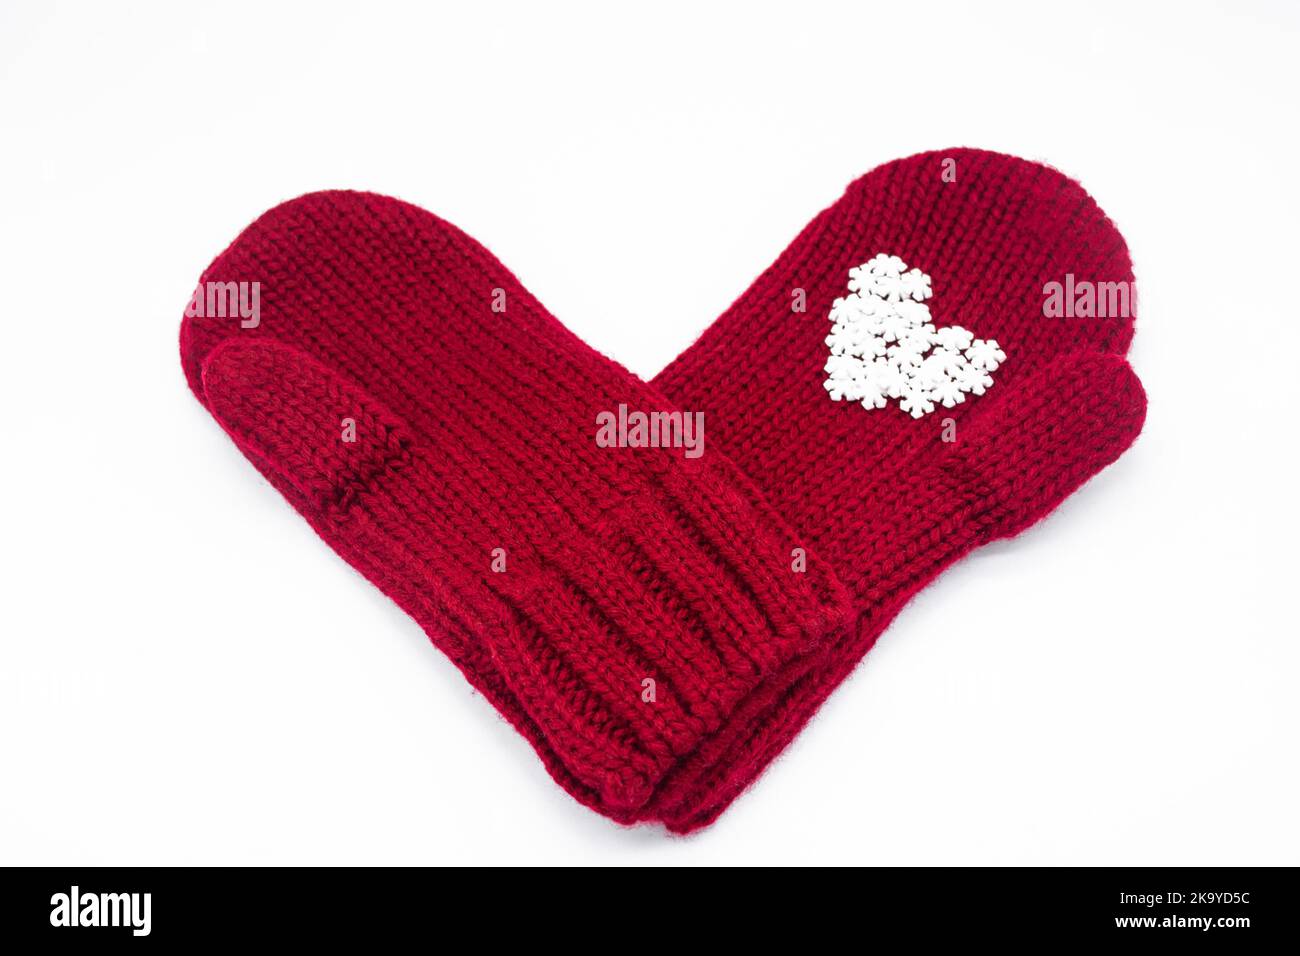 Deux moufles rouges tricotées sont l'une l'autre avec des flocons de neige blancs en forme de coeur.Arrière-plan blanc, isolé.Concept de Noël, hiver, lo Banque D'Images